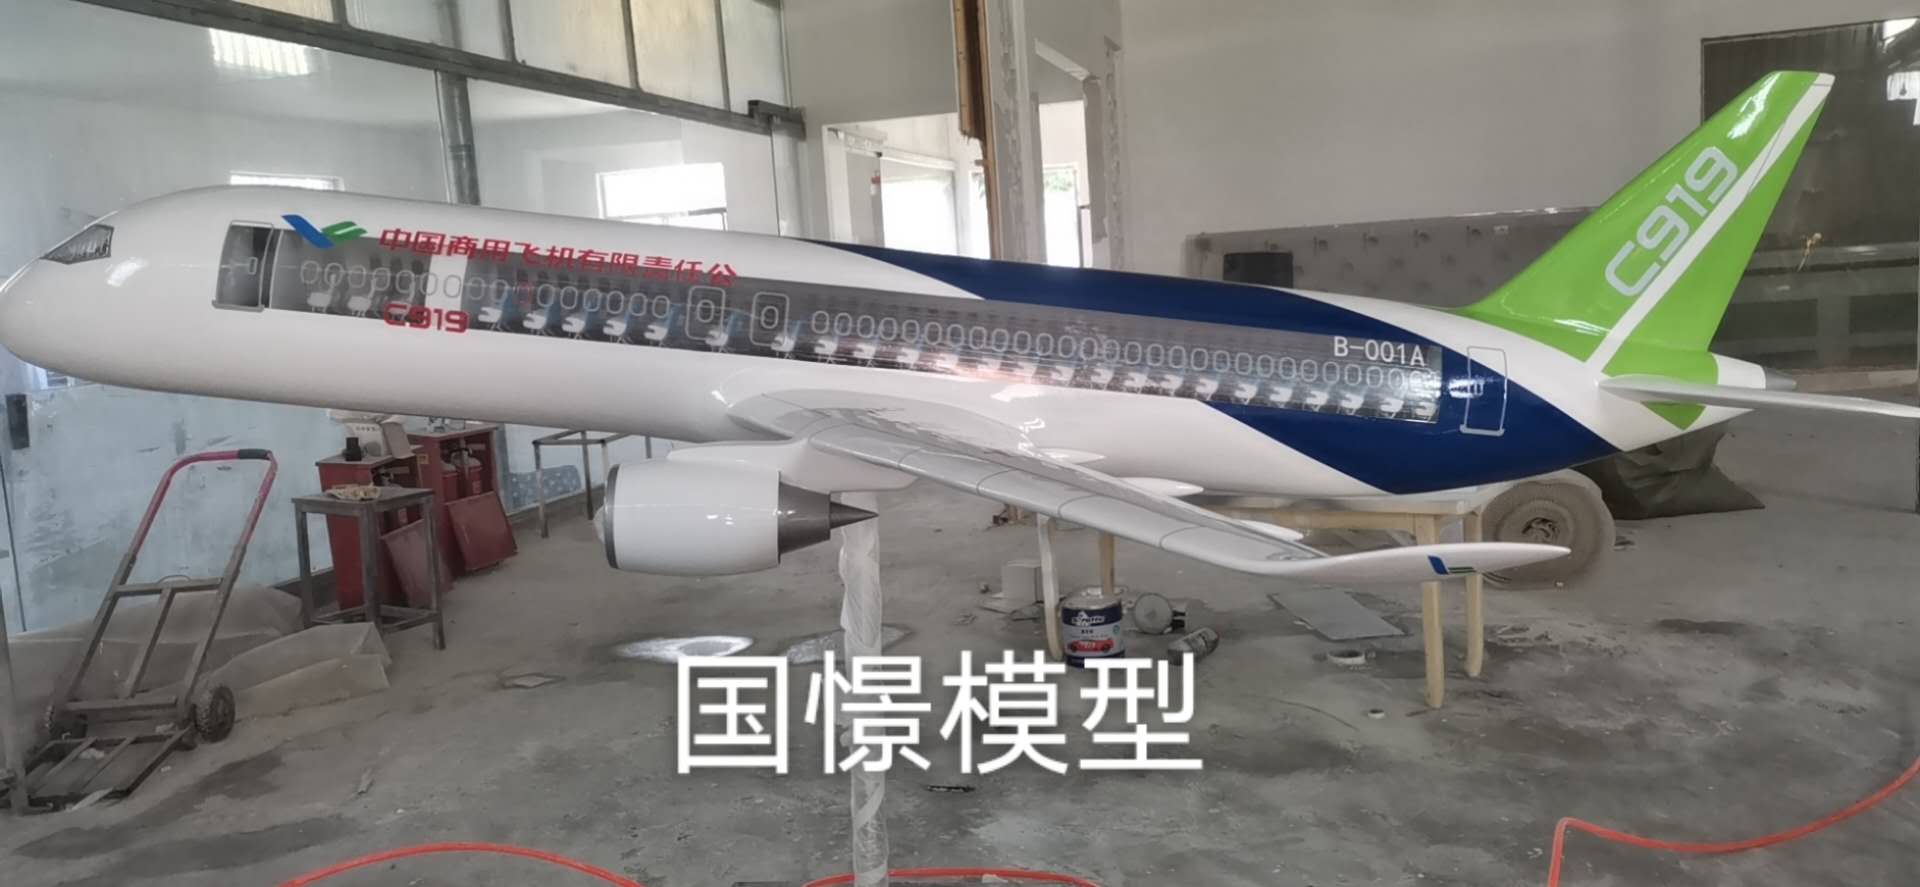 边坝县飞机模型